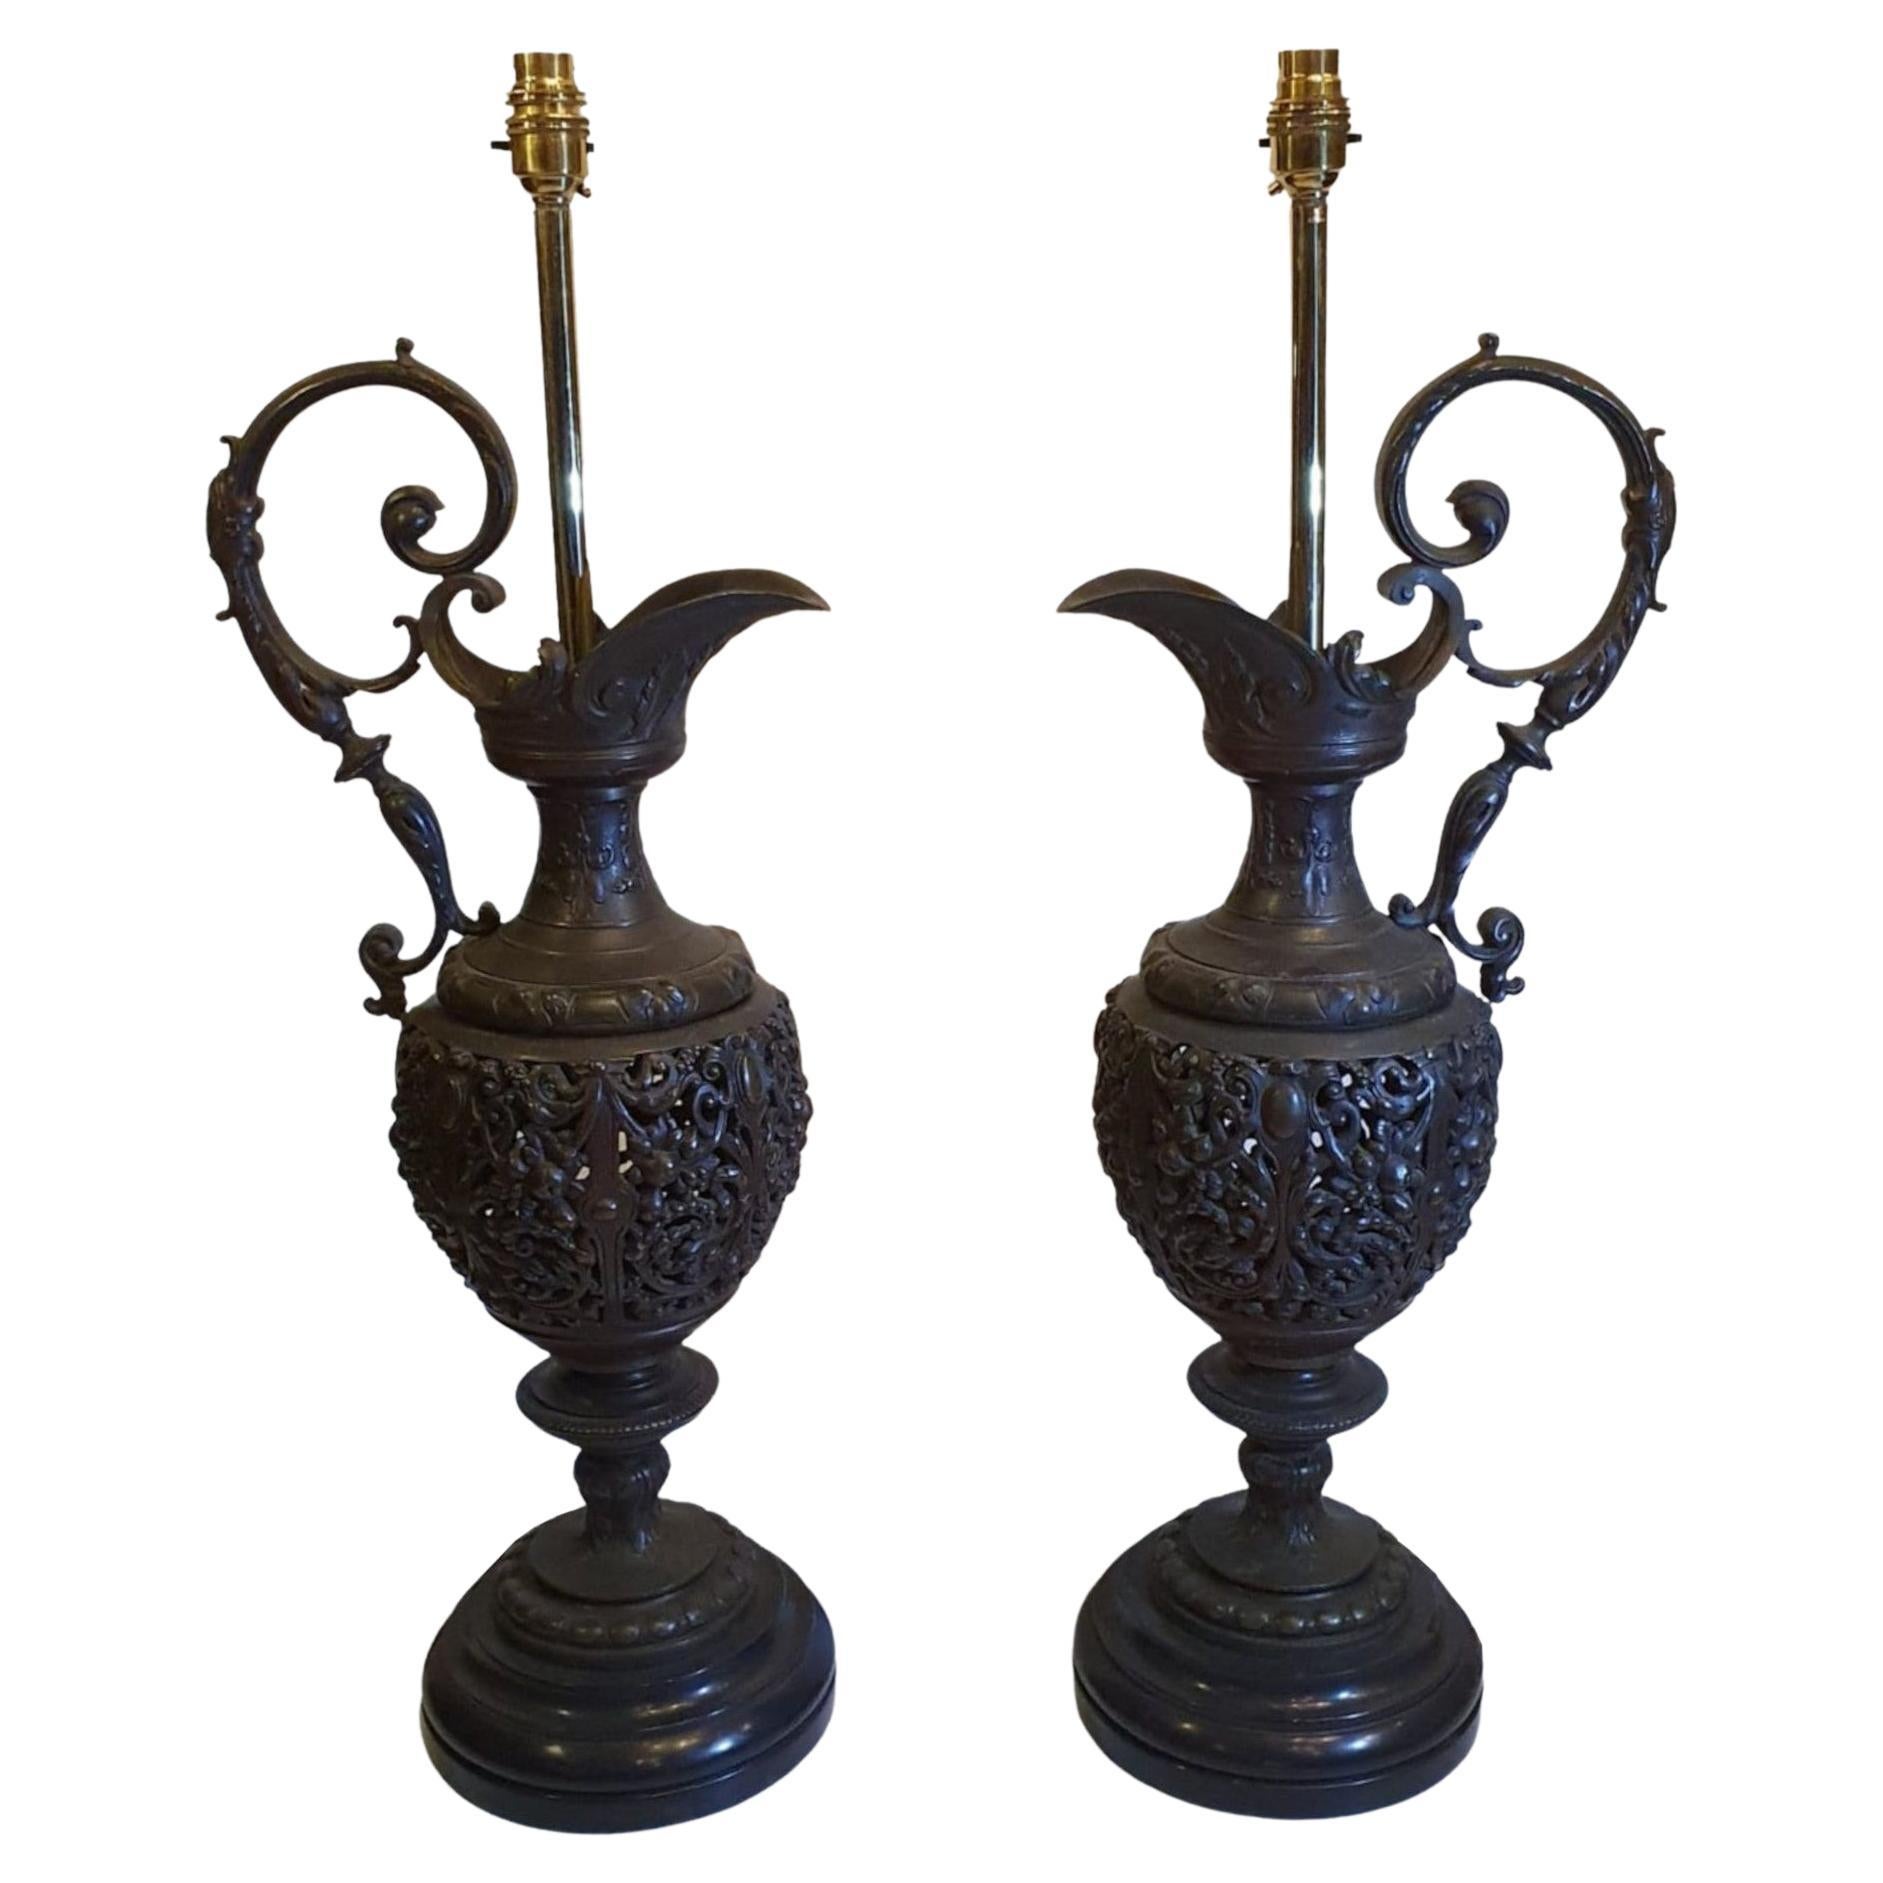 Seltenes Paar Bronzewürfel aus dem 19. Jahrhundert, umgewandelt in Tischlampen